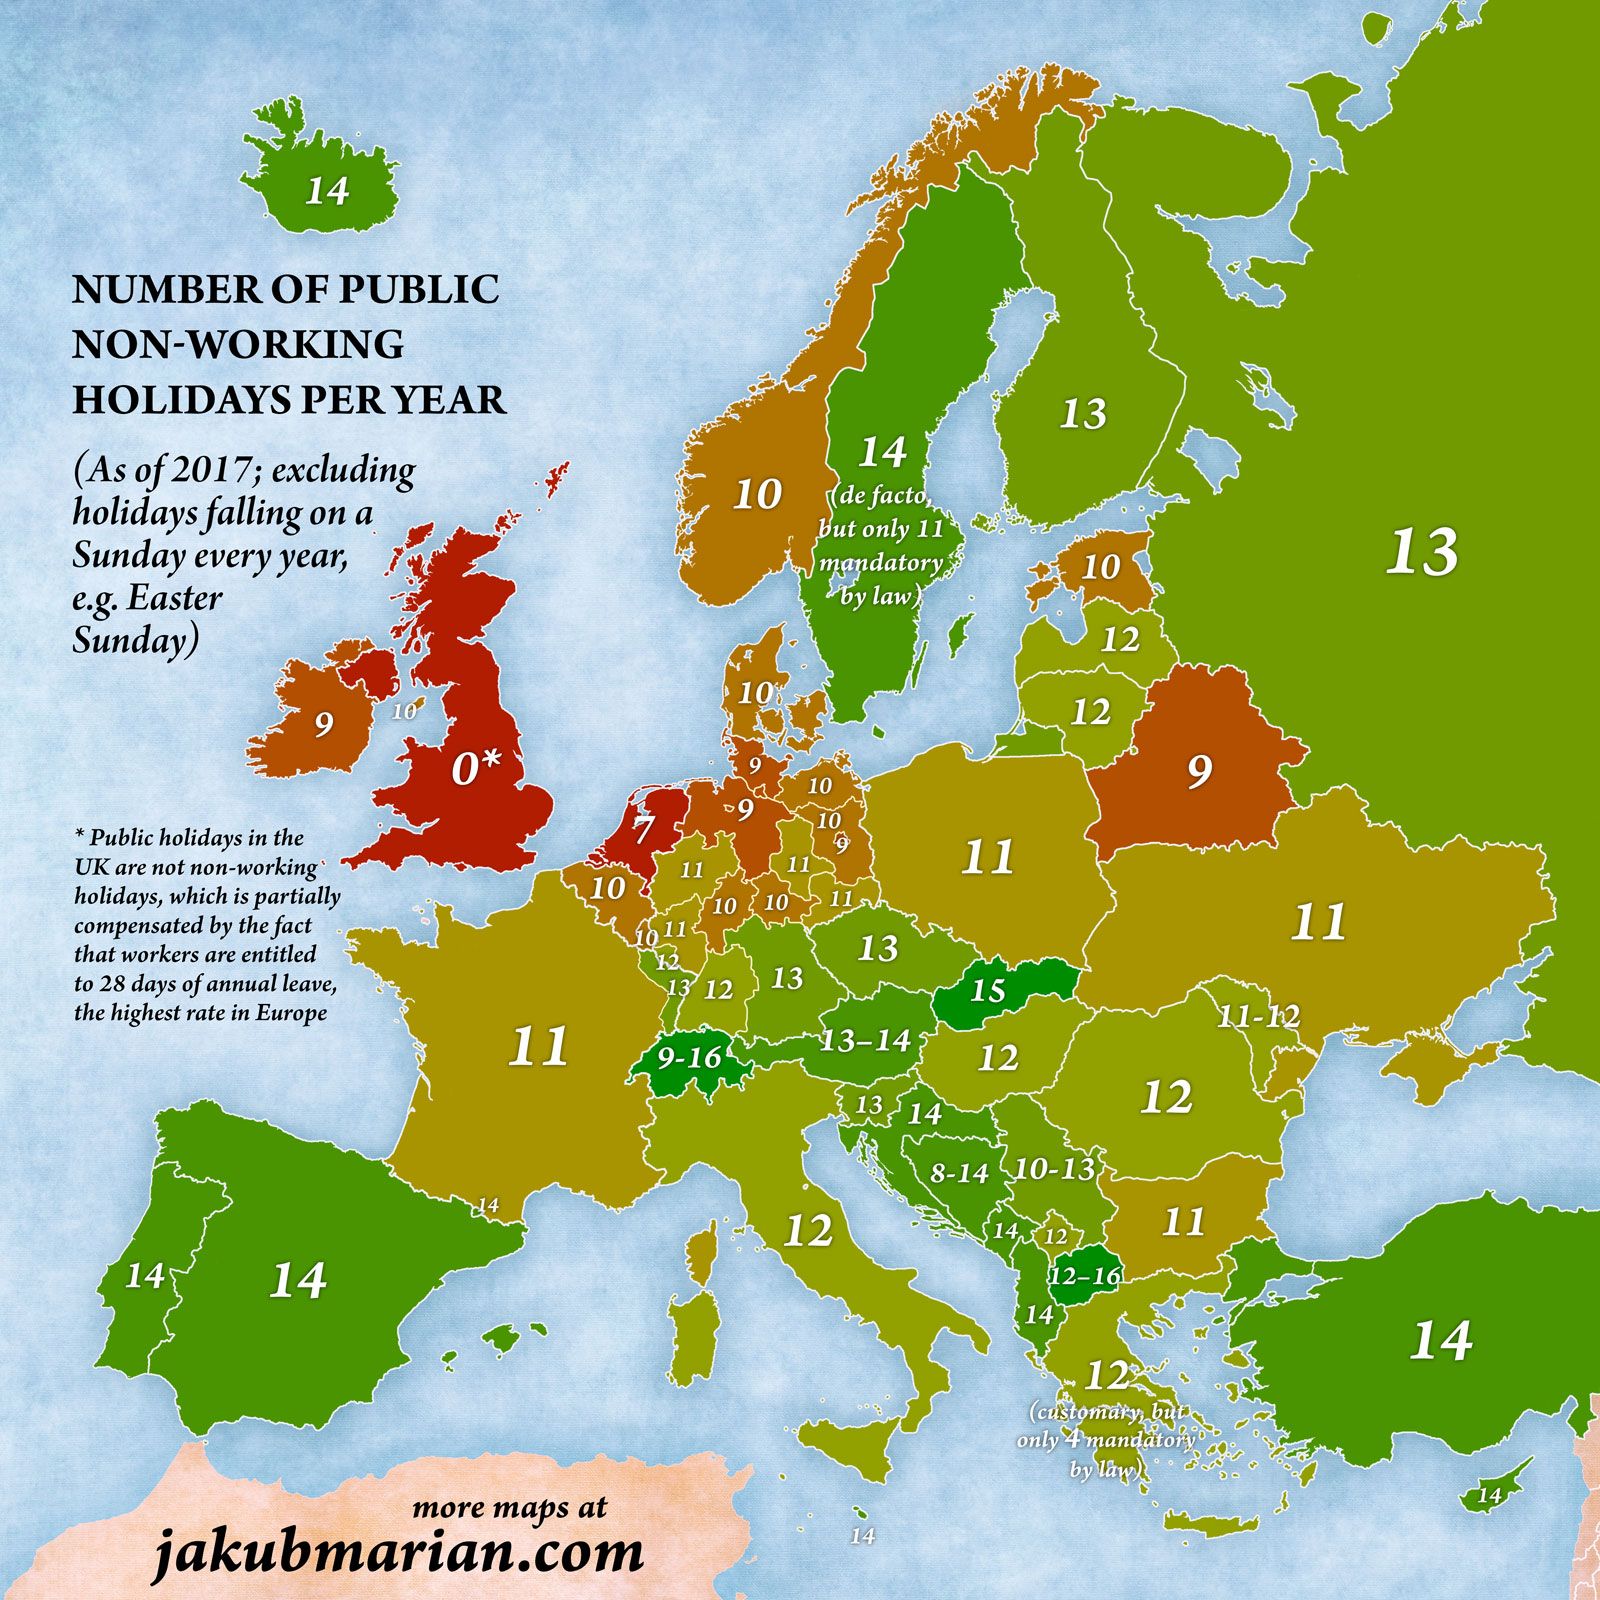 Slováci majú takmer najviac štátnych sviatkov v Európe. Tesne nás